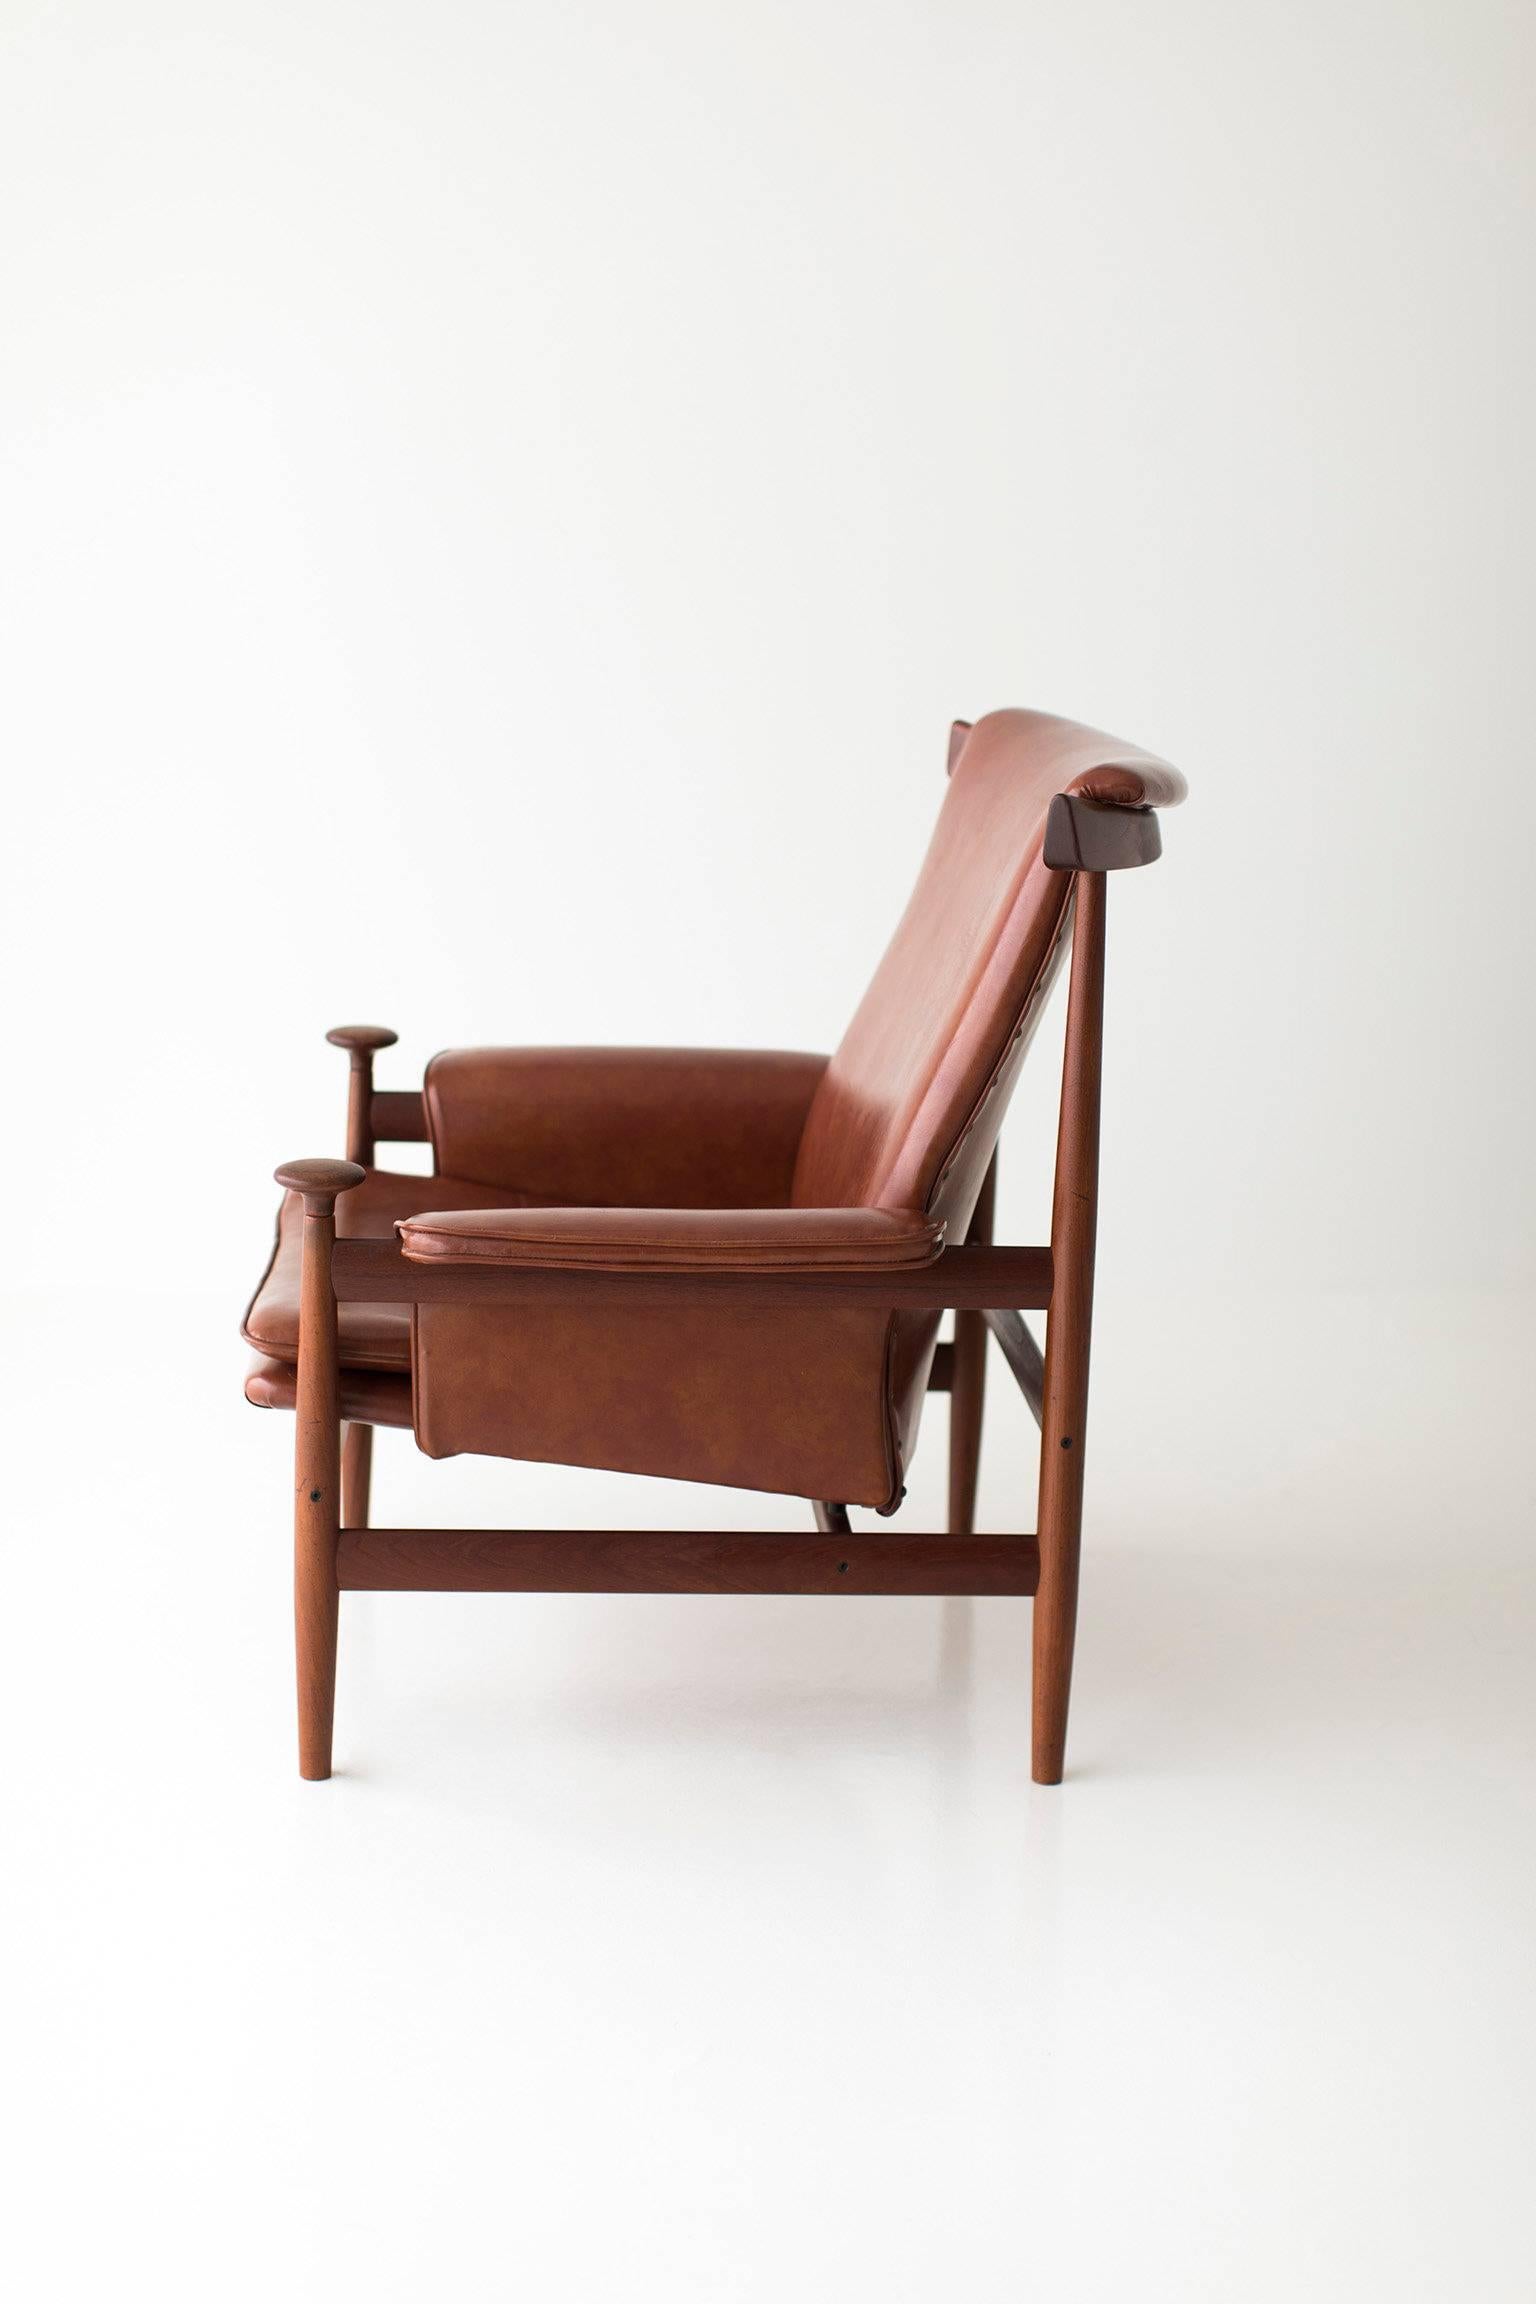 Teak Finn Juhl Lounge Chair for France & Sons